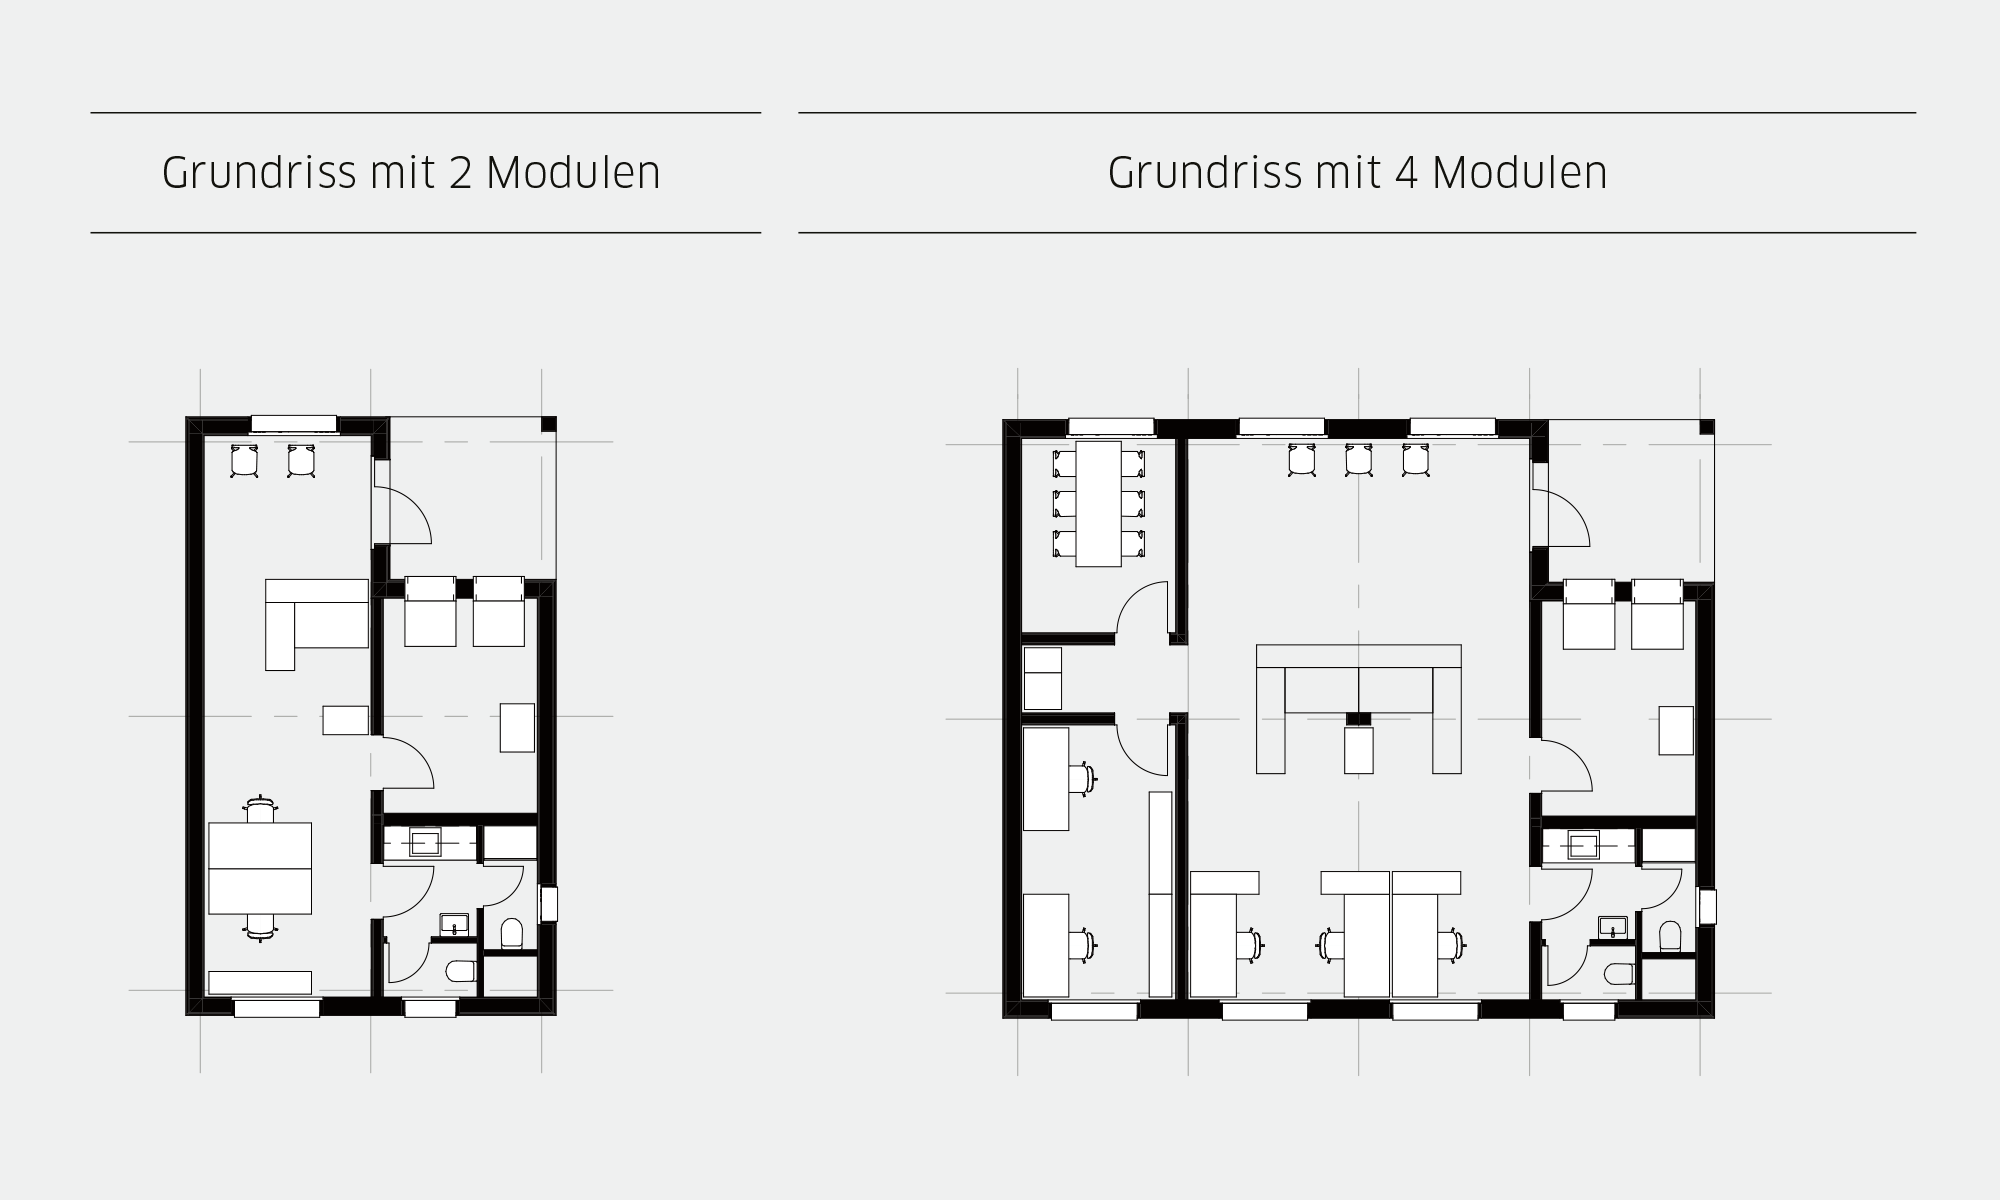 Holzmodul-Pavillon in verschiedenen Standardgrössen und Grundrissgestaltungen